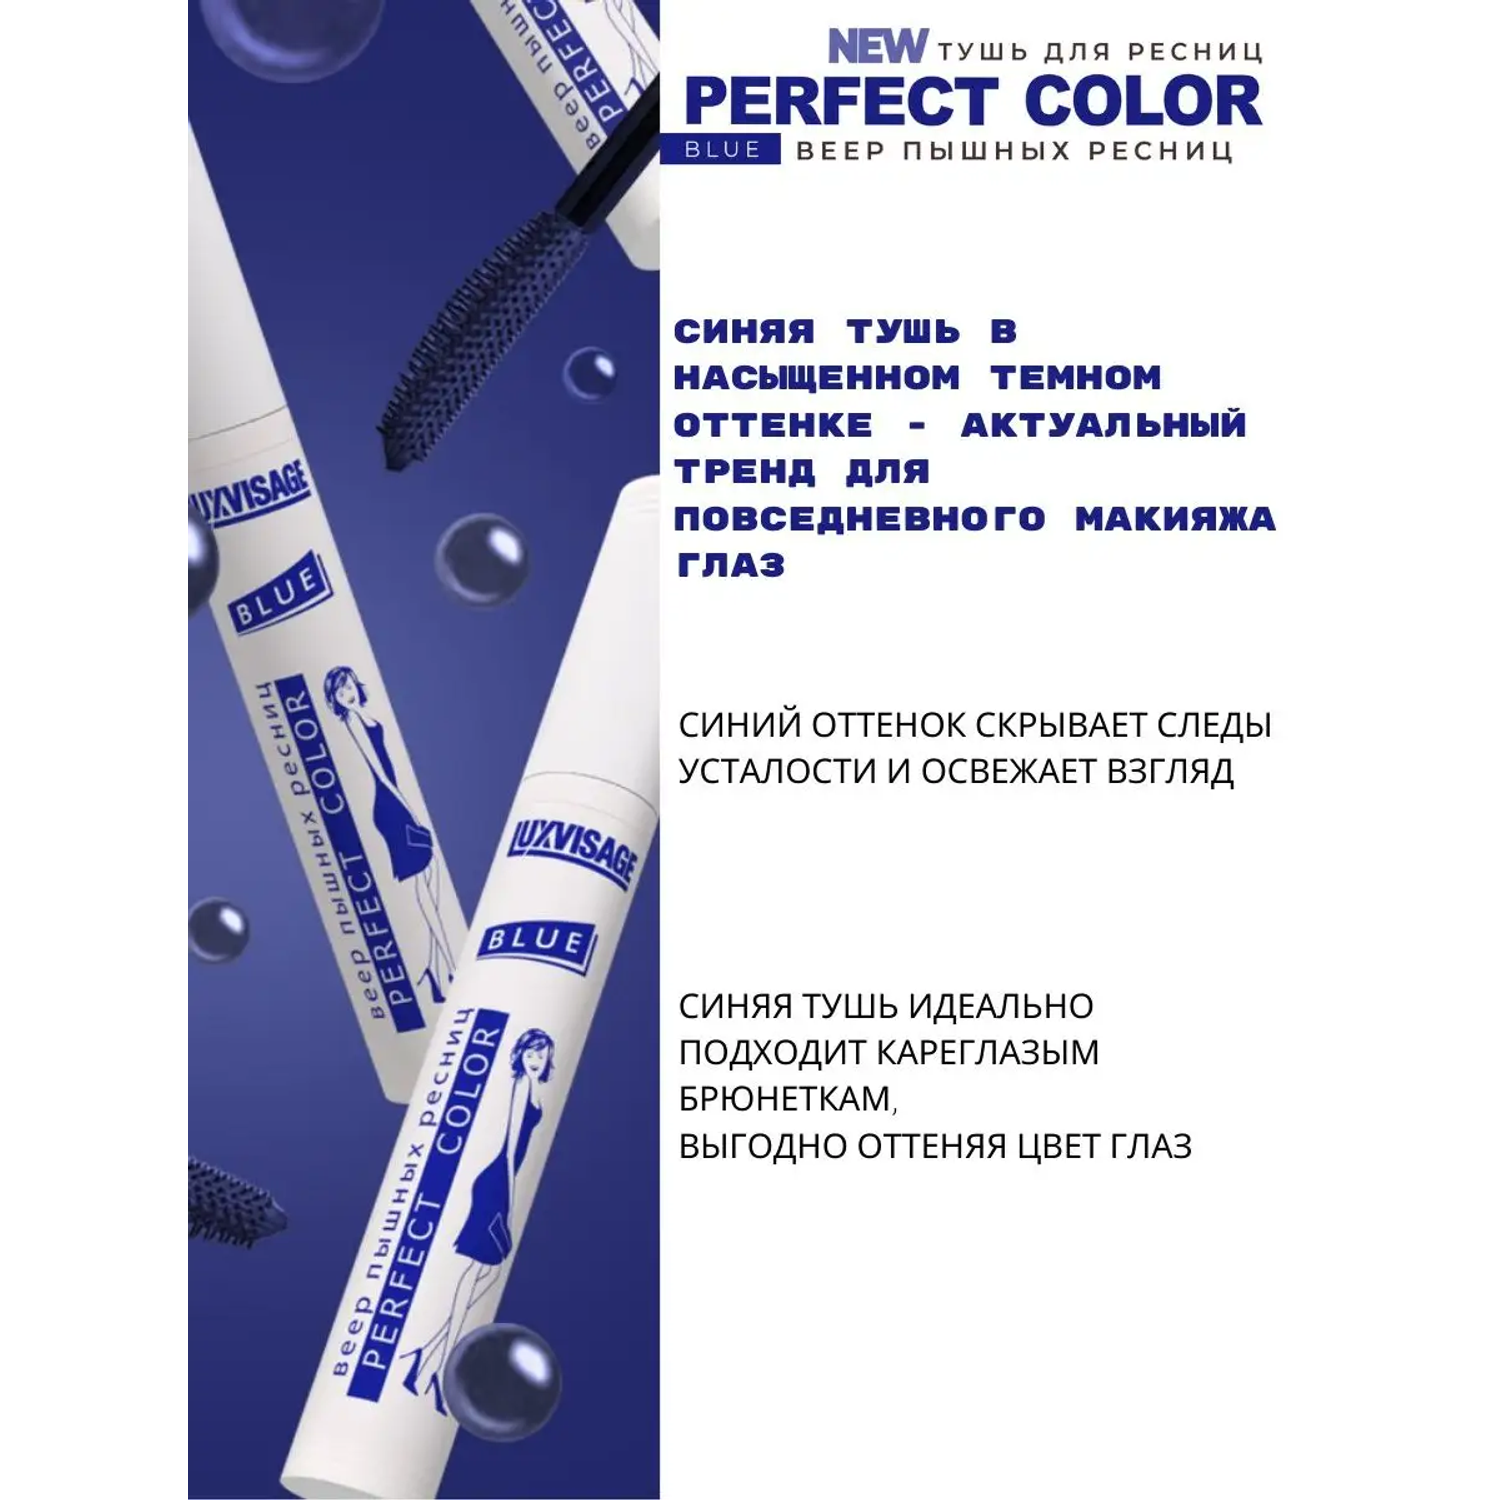 Тушь для ресниц Luxvisage Perfect Color веер пышных ресниц тон Синий 9г - фото 4